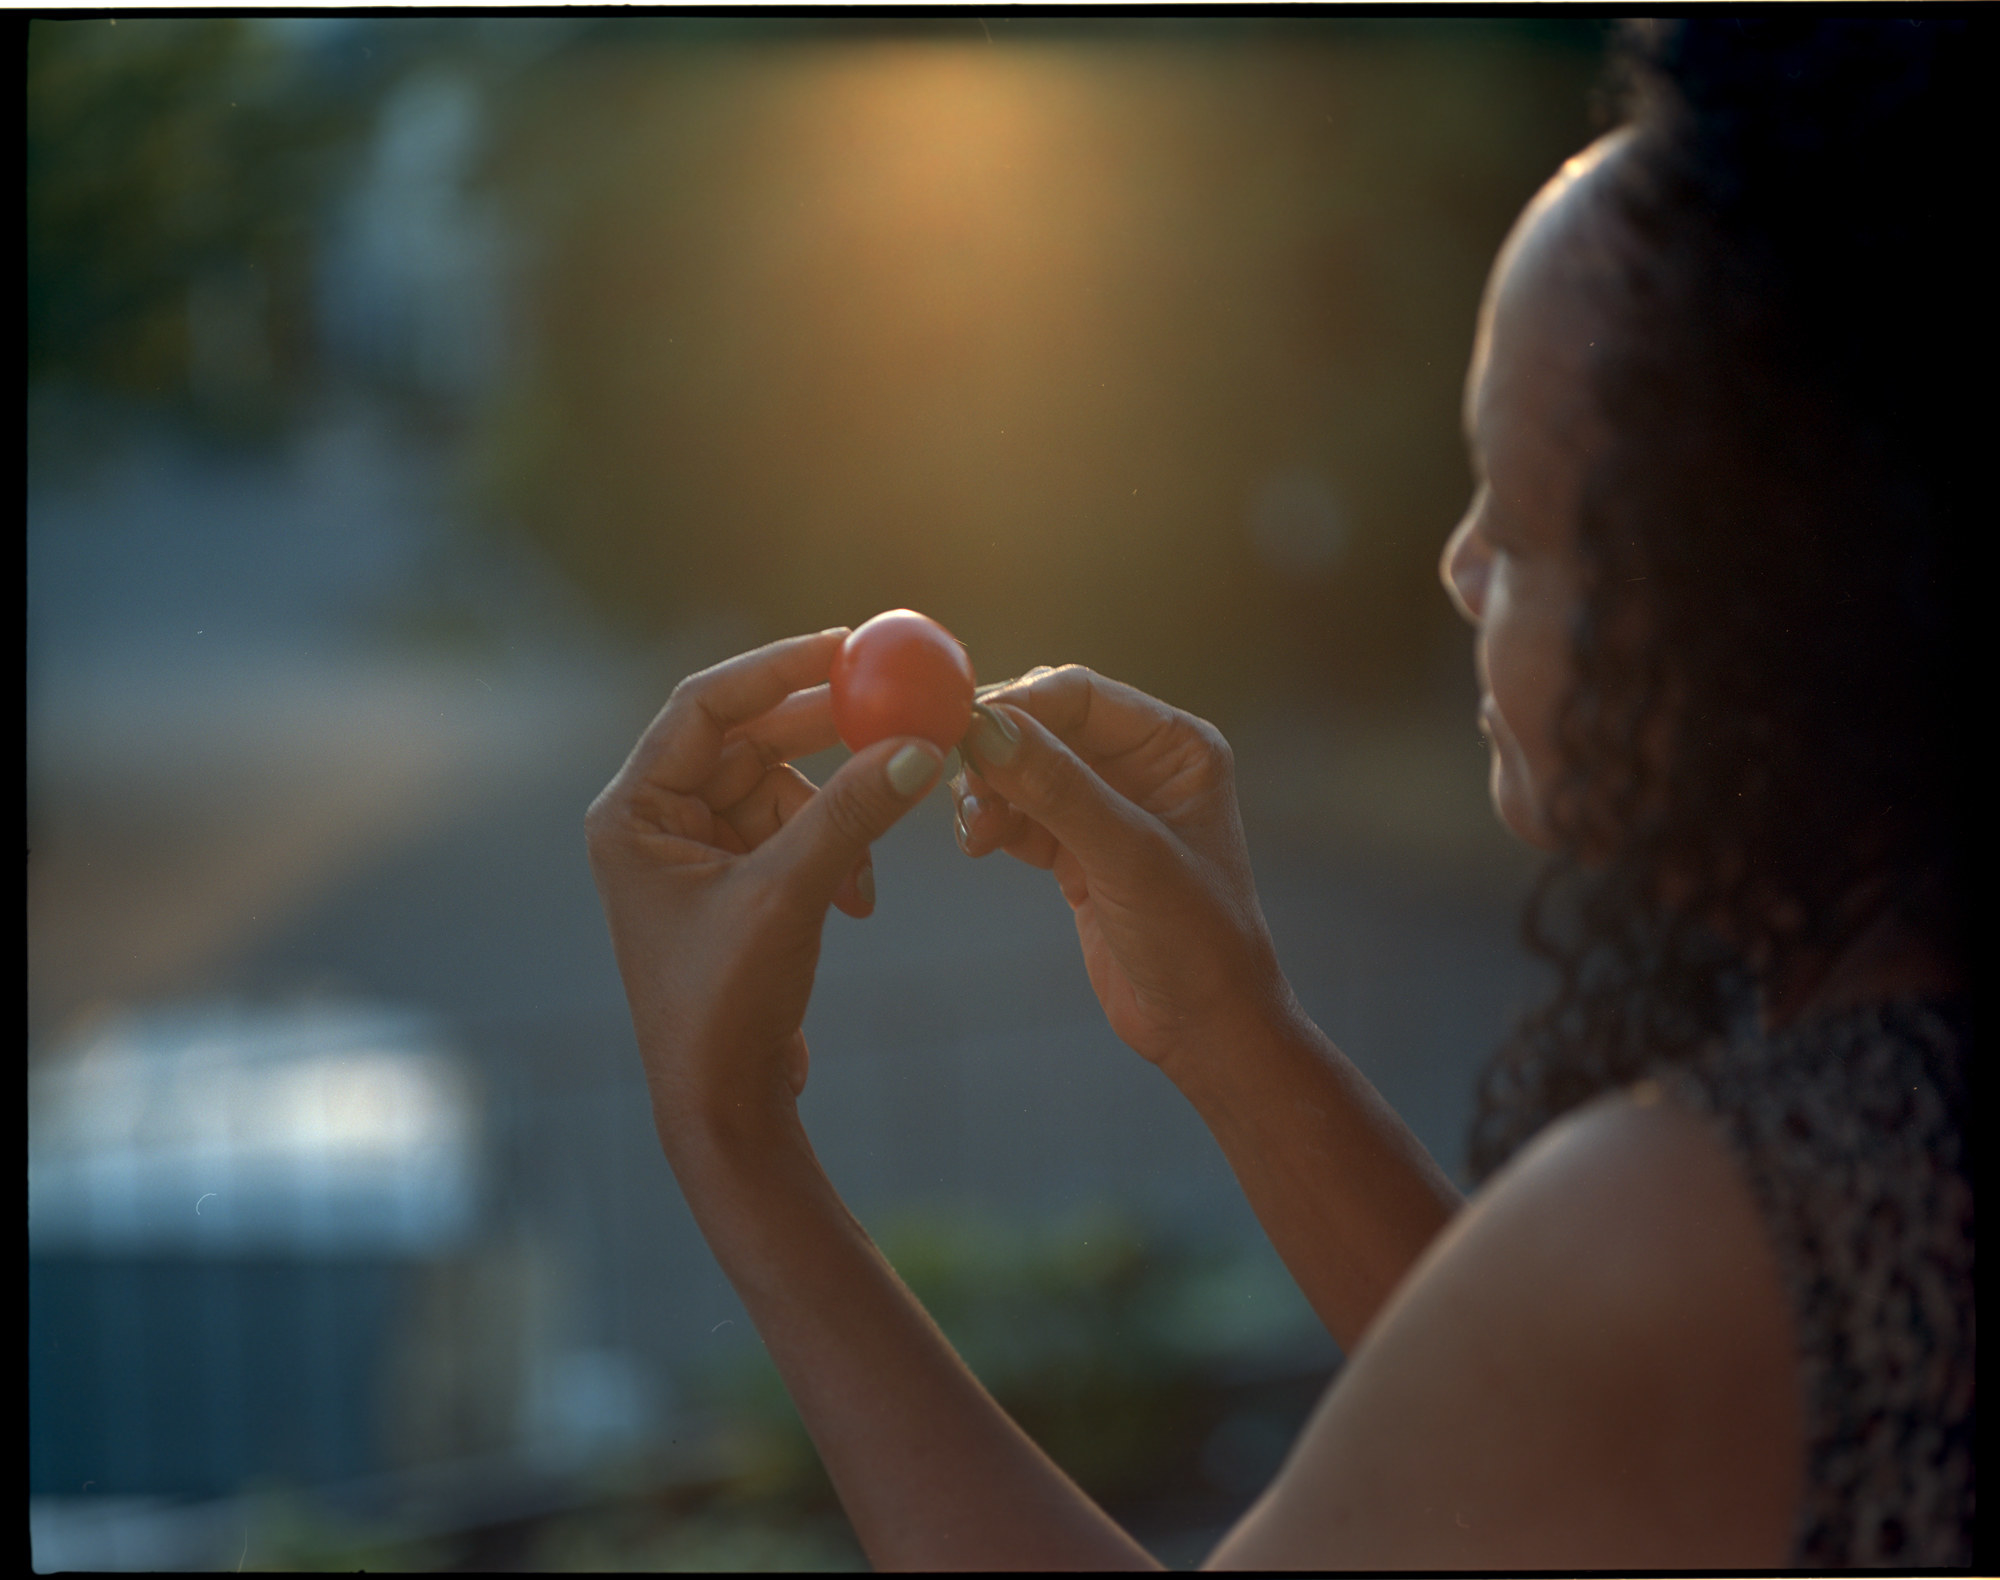 A woman holding a tomato